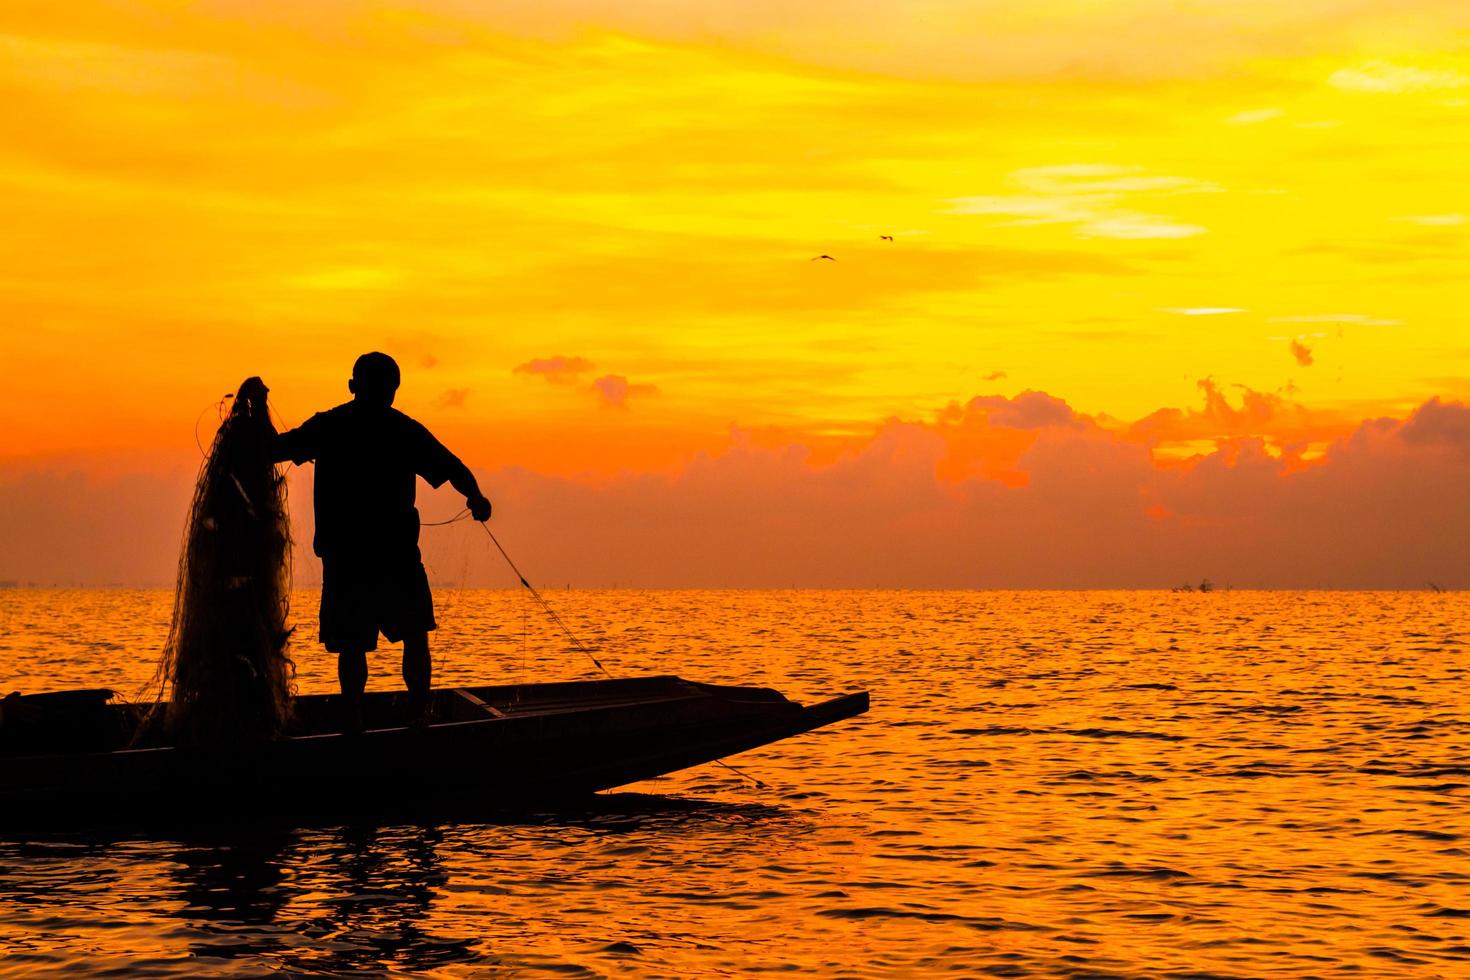 silueta de pescadores pescando en el lago a la hora del amanecer. foto